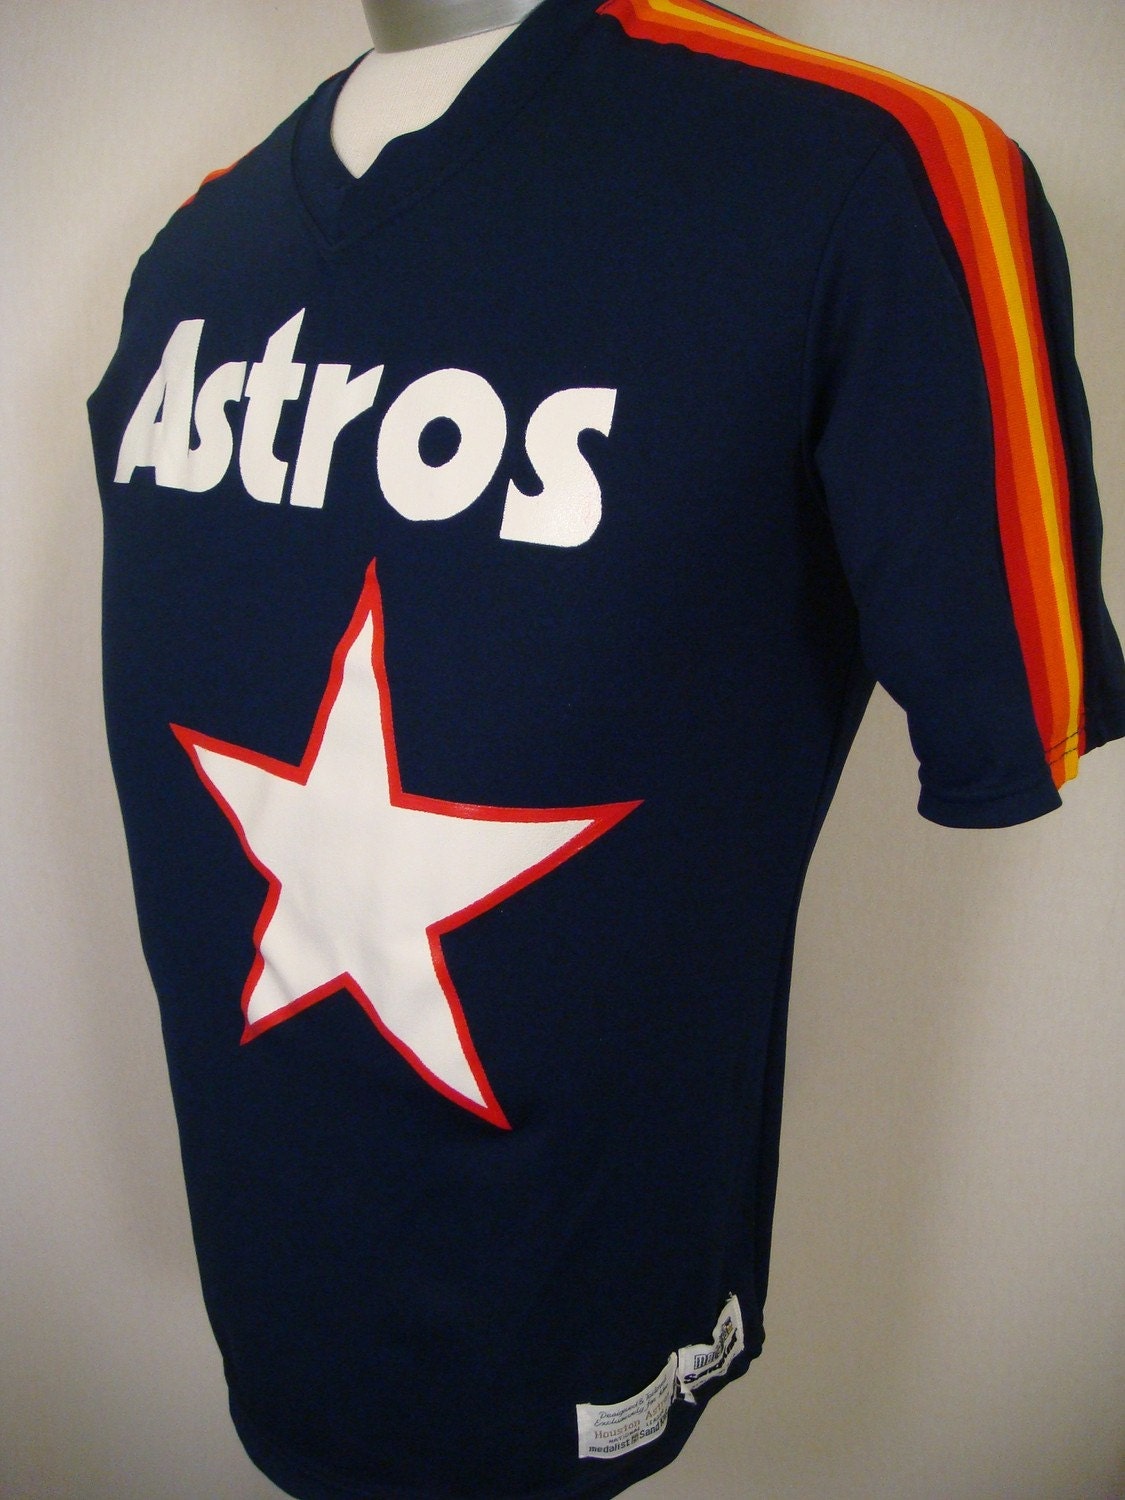 old houston astros uniforms. houston astros uniforms.